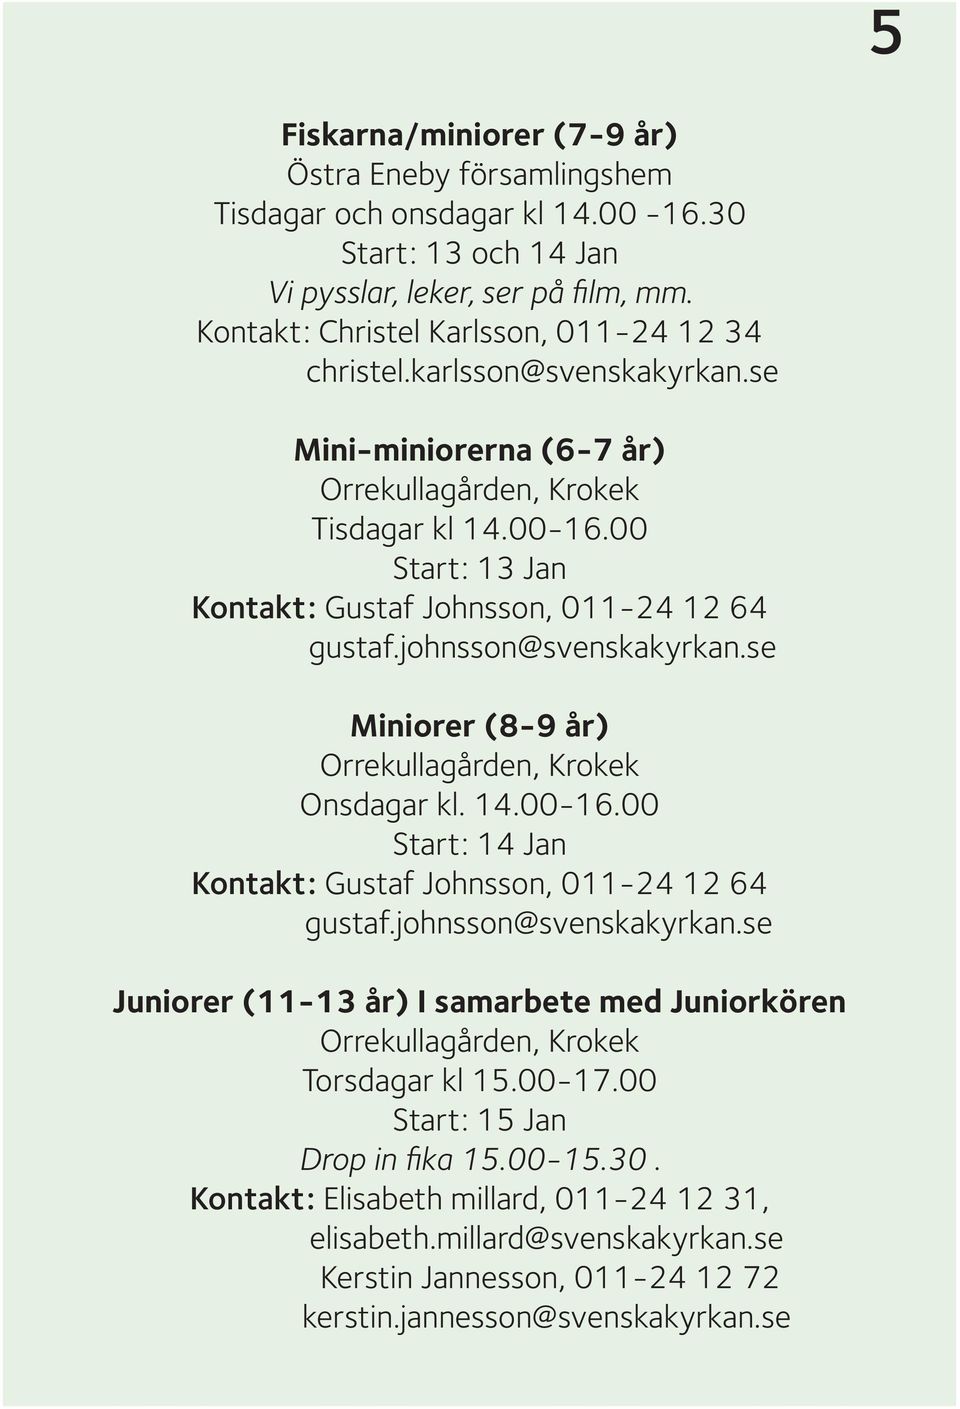 se Miniorer (8-9 år) Orrekullagården, Krokek Onsdagar kl. 14.00-16.00 Start: 14 Jan Kontakt: Gustaf Johnsson, 011-24 12 64 gustaf.johnsson@svenskakyrkan.